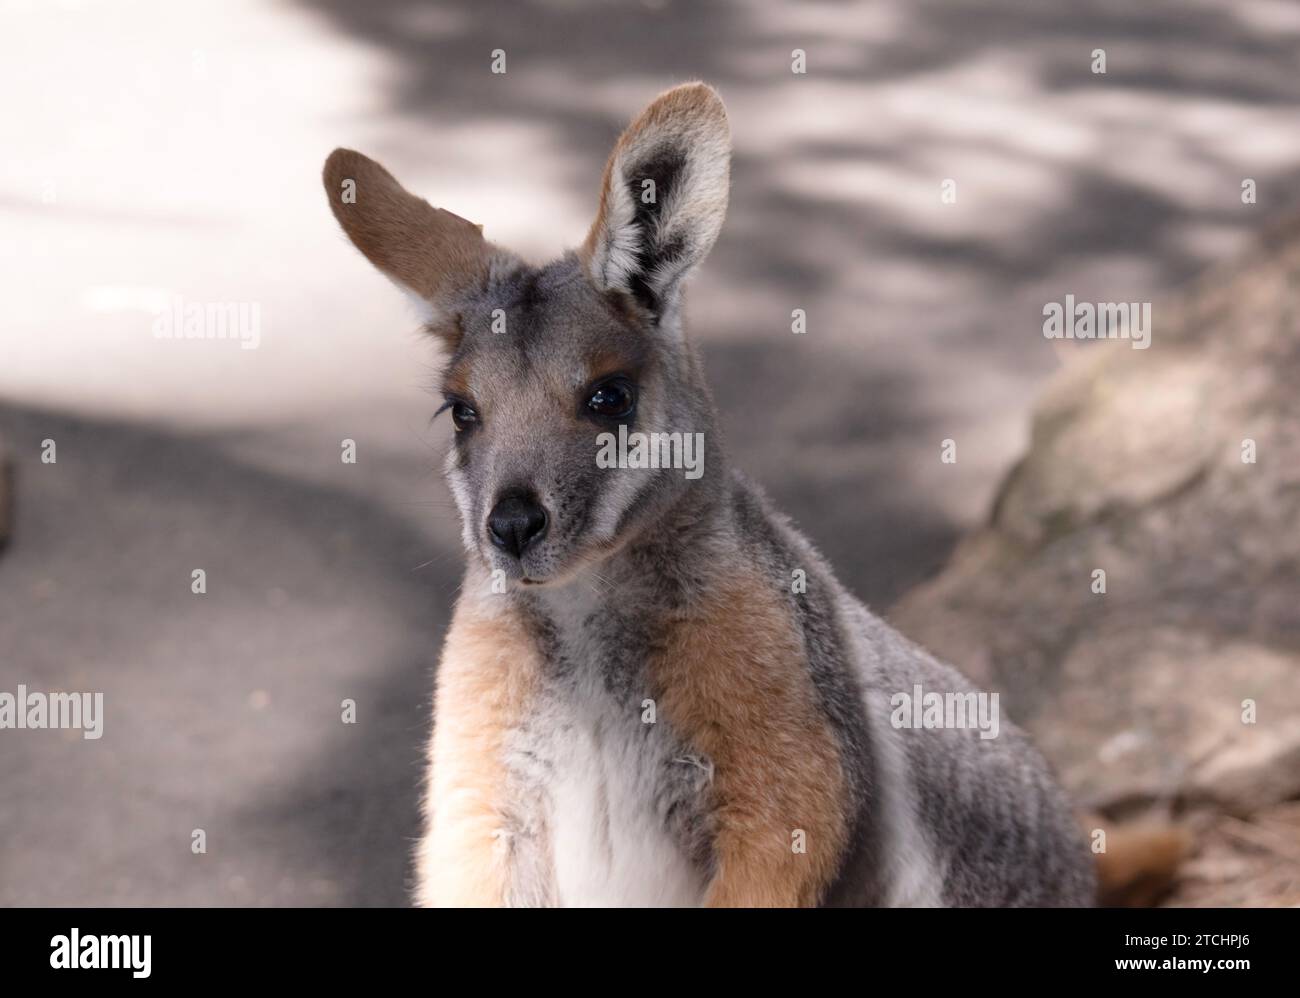 Das Gelbfüßige Rock-Wallaby hat eine helle Farbe mit einem weißen Wangenstreifen und orangen Ohren. Stockfoto